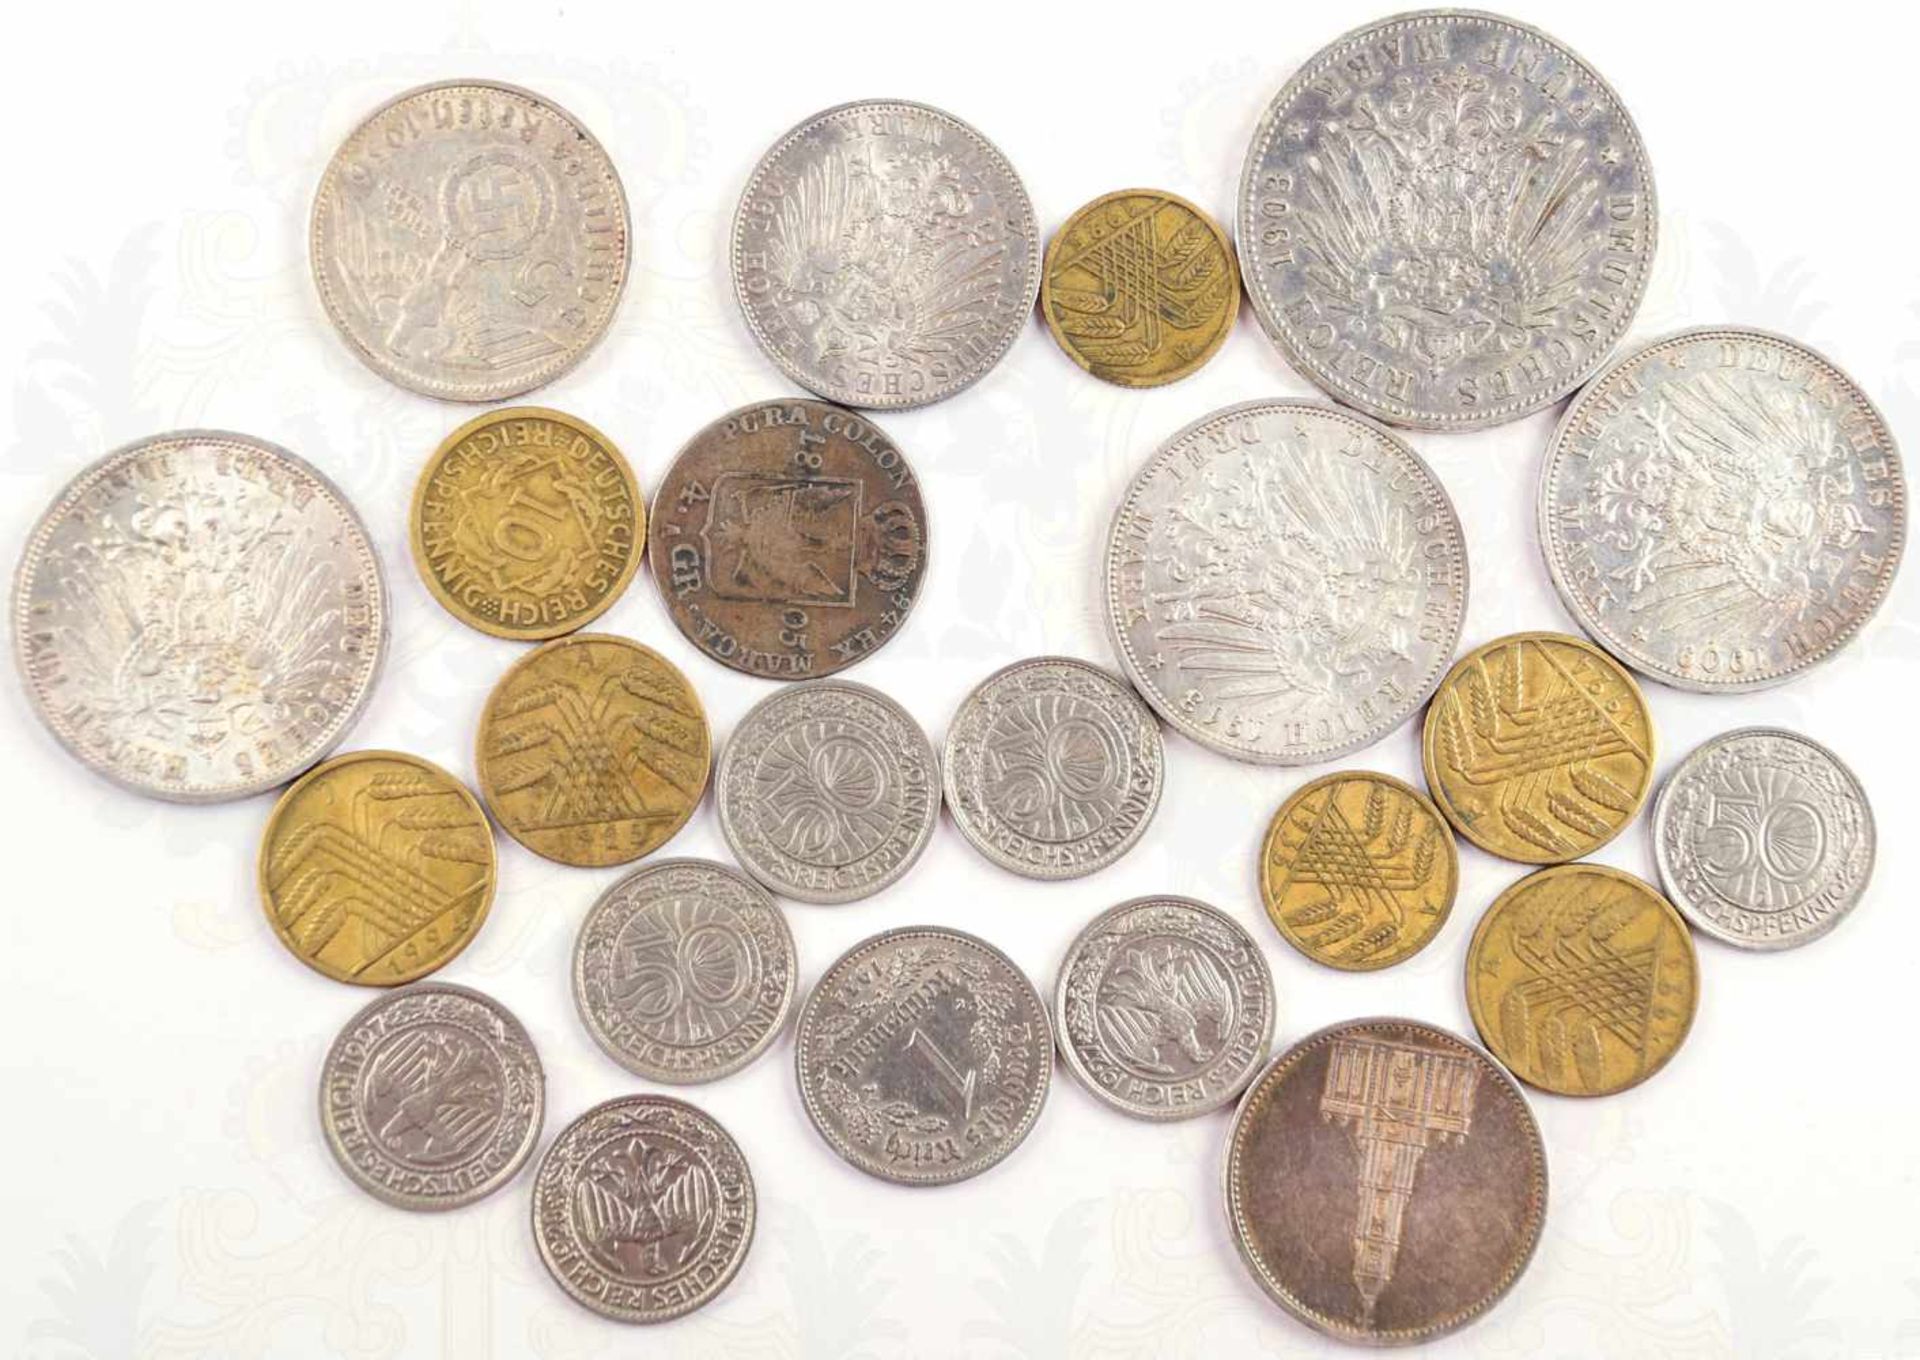 23 MÜNZEN: 4 Groschen Preußen 1805; 5 Silbermünzen Kaiserreich, 1x 2-Mark 1902, 3x 3-Mark 1909/ - Bild 2 aus 2